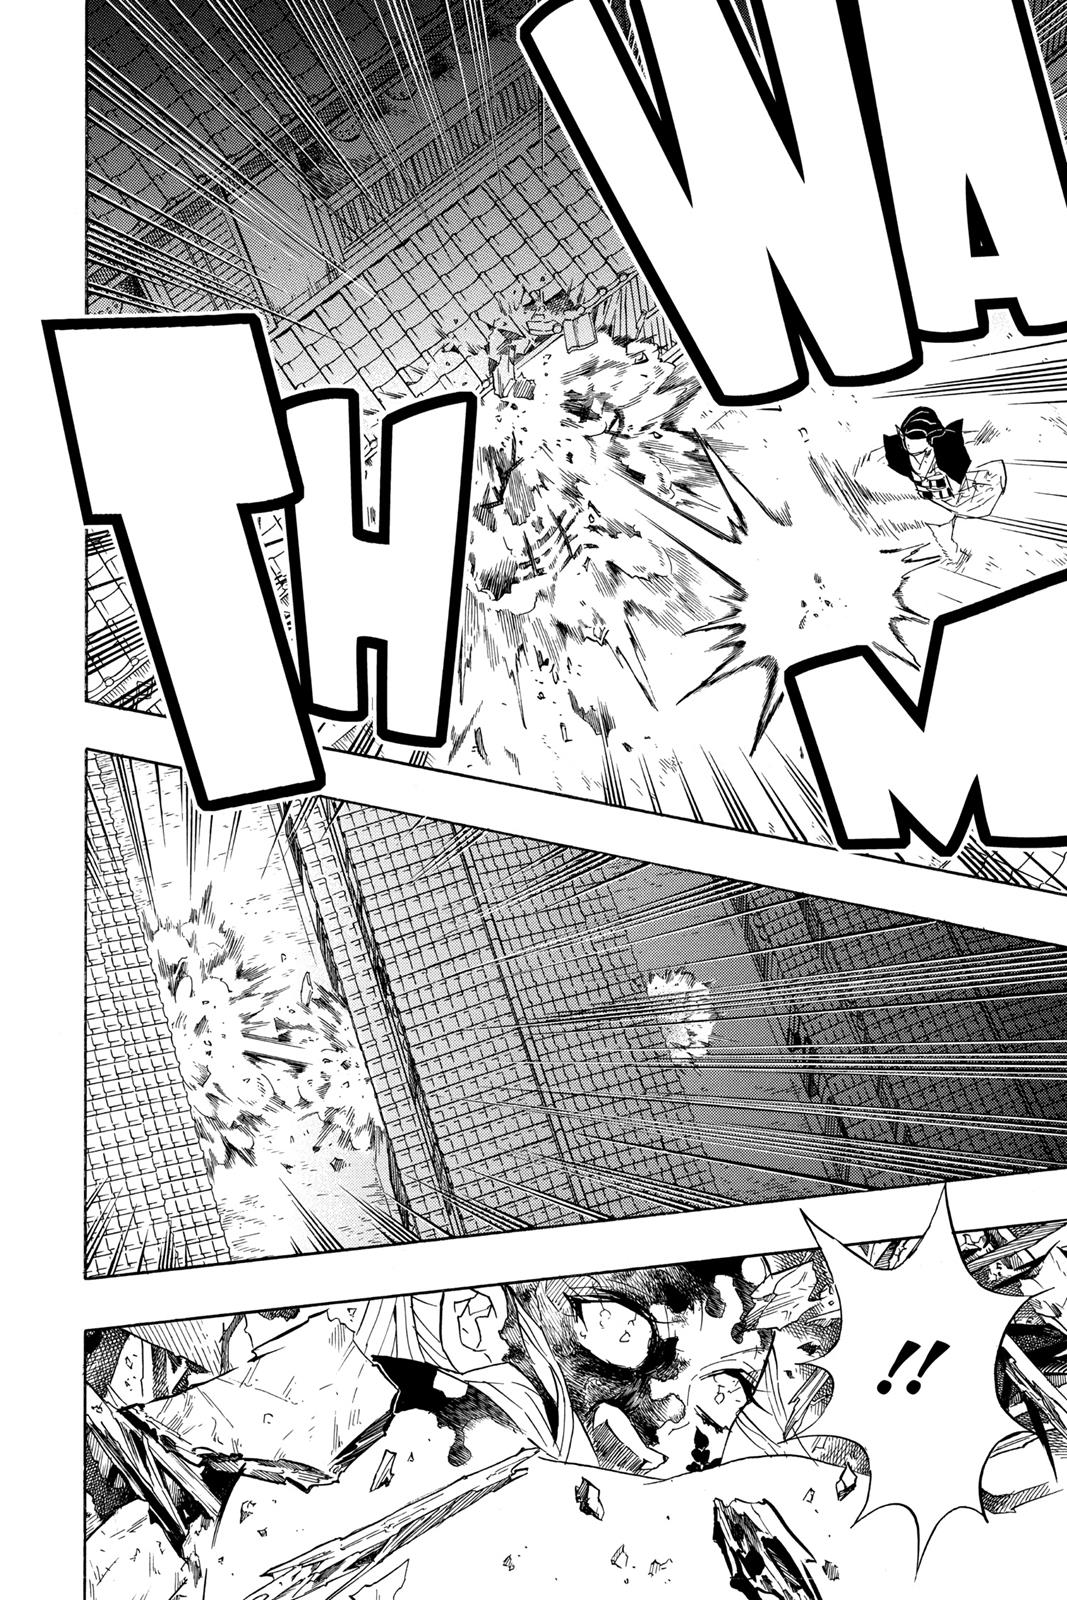 Demon Slayer Manga Manga Chapter - 84 - image 8